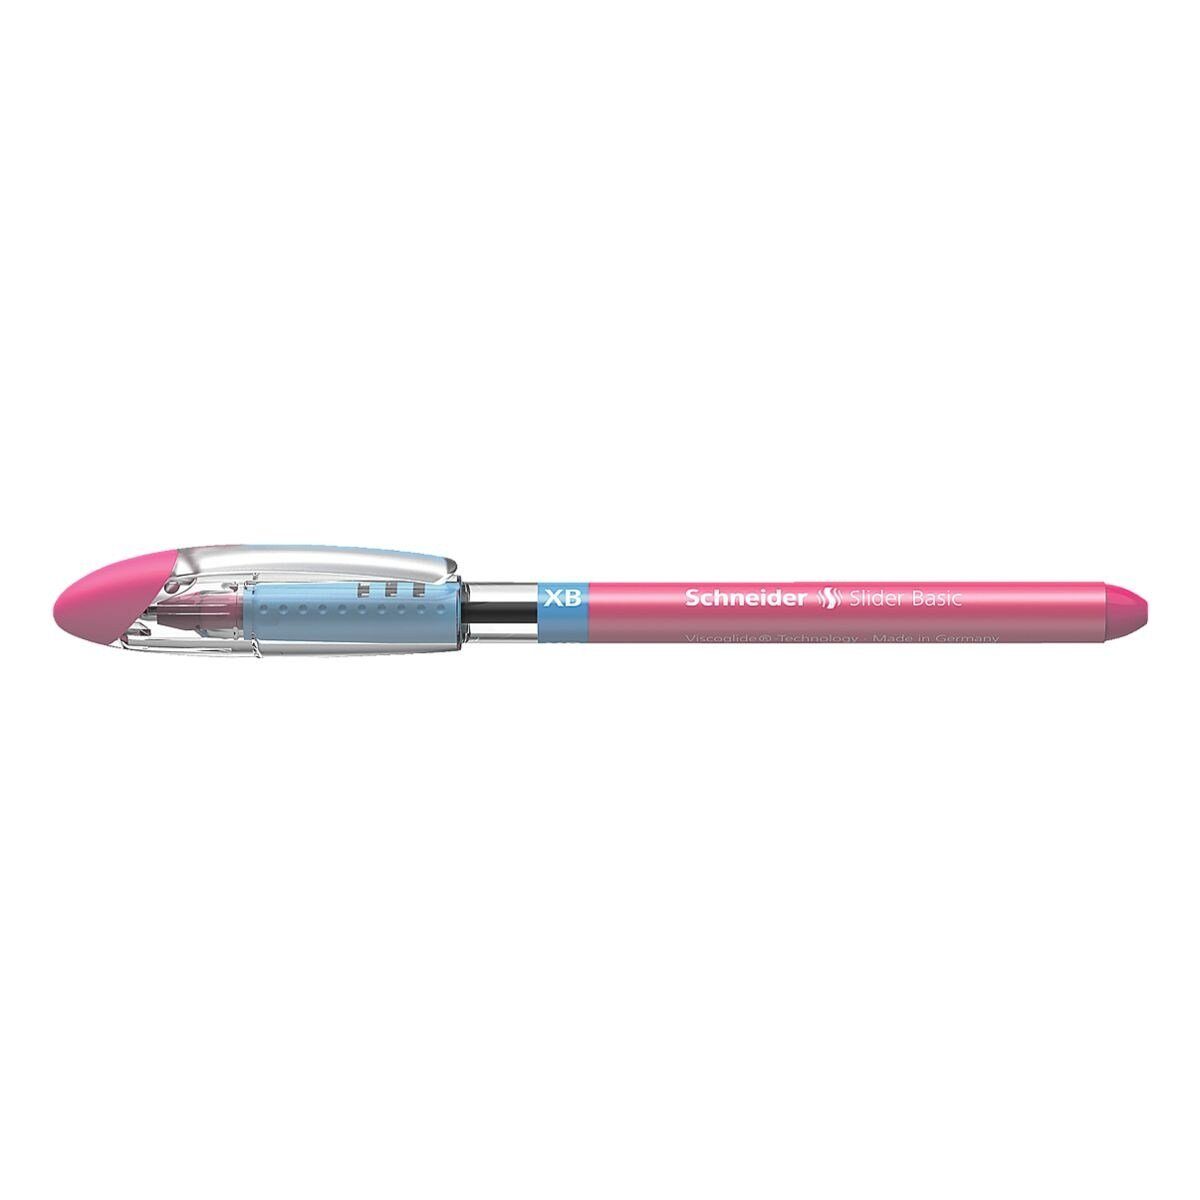 Schneider Kugelschreiber Slider XB 1512, mit Kappe, Strichbreite: 0,7 mm (XB) pink